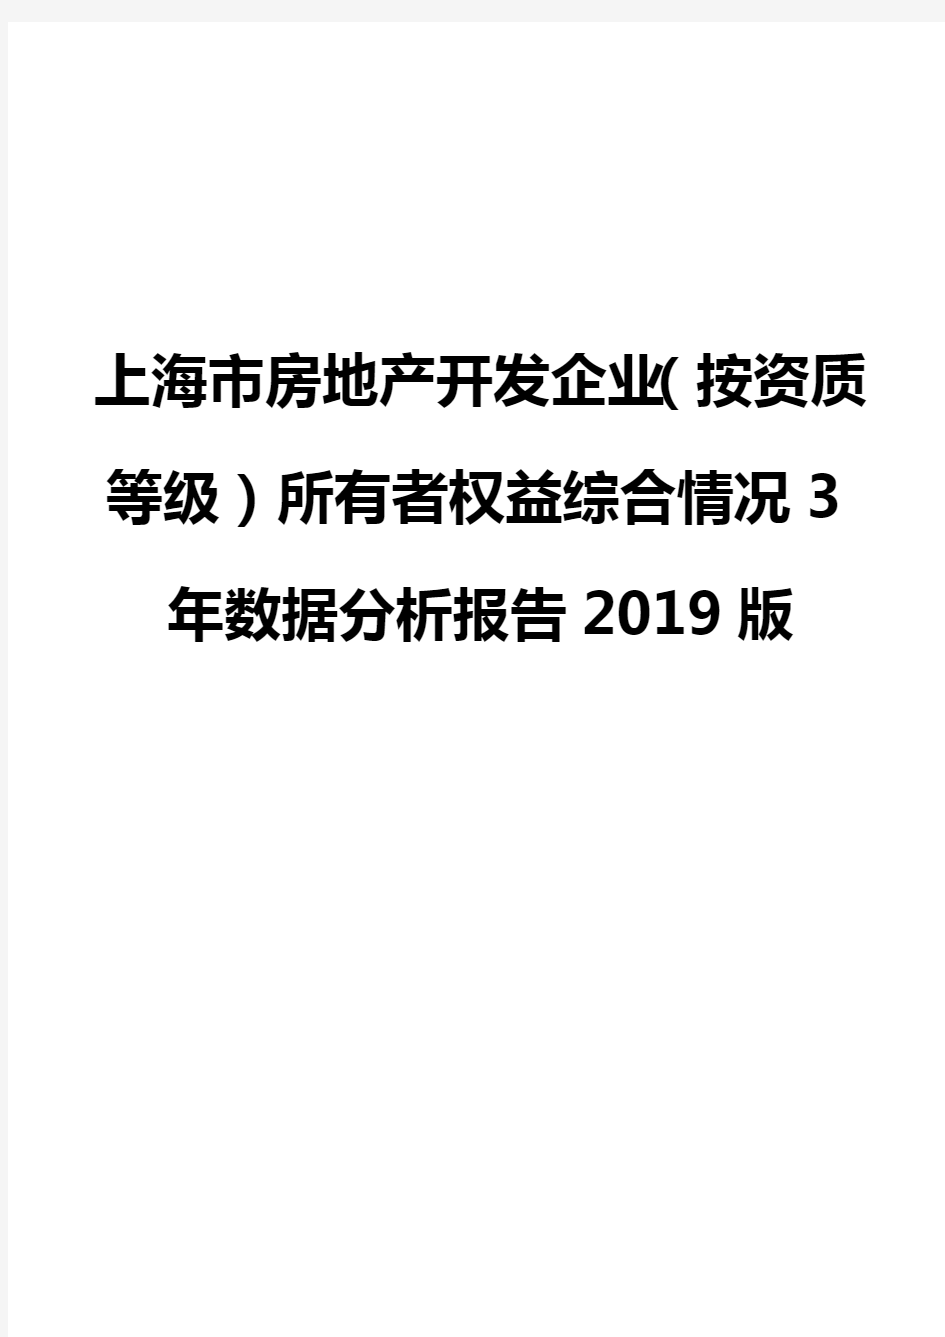 上海市房地产开发企业(按资质等级)所有者权益综合情况3年数据分析报告2019版